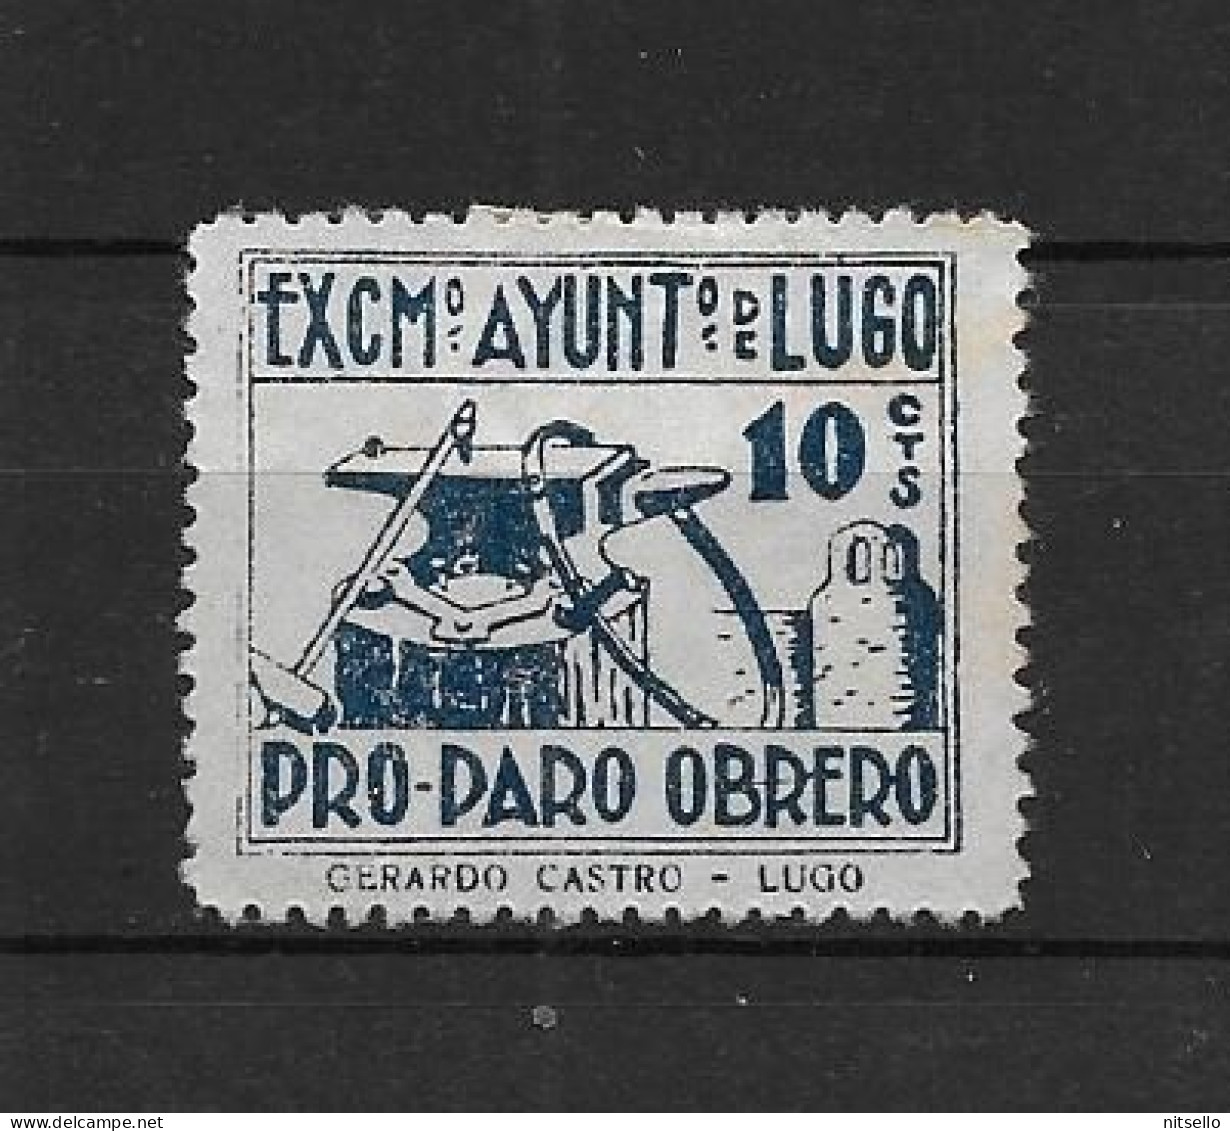 LOTE 2112 E   ///  (C045) LUGO PRO PARO OBRERO  NSG      ¡¡¡ LIQUIDATION - JE LIQUIDE !!! - Spanish Civil War Labels